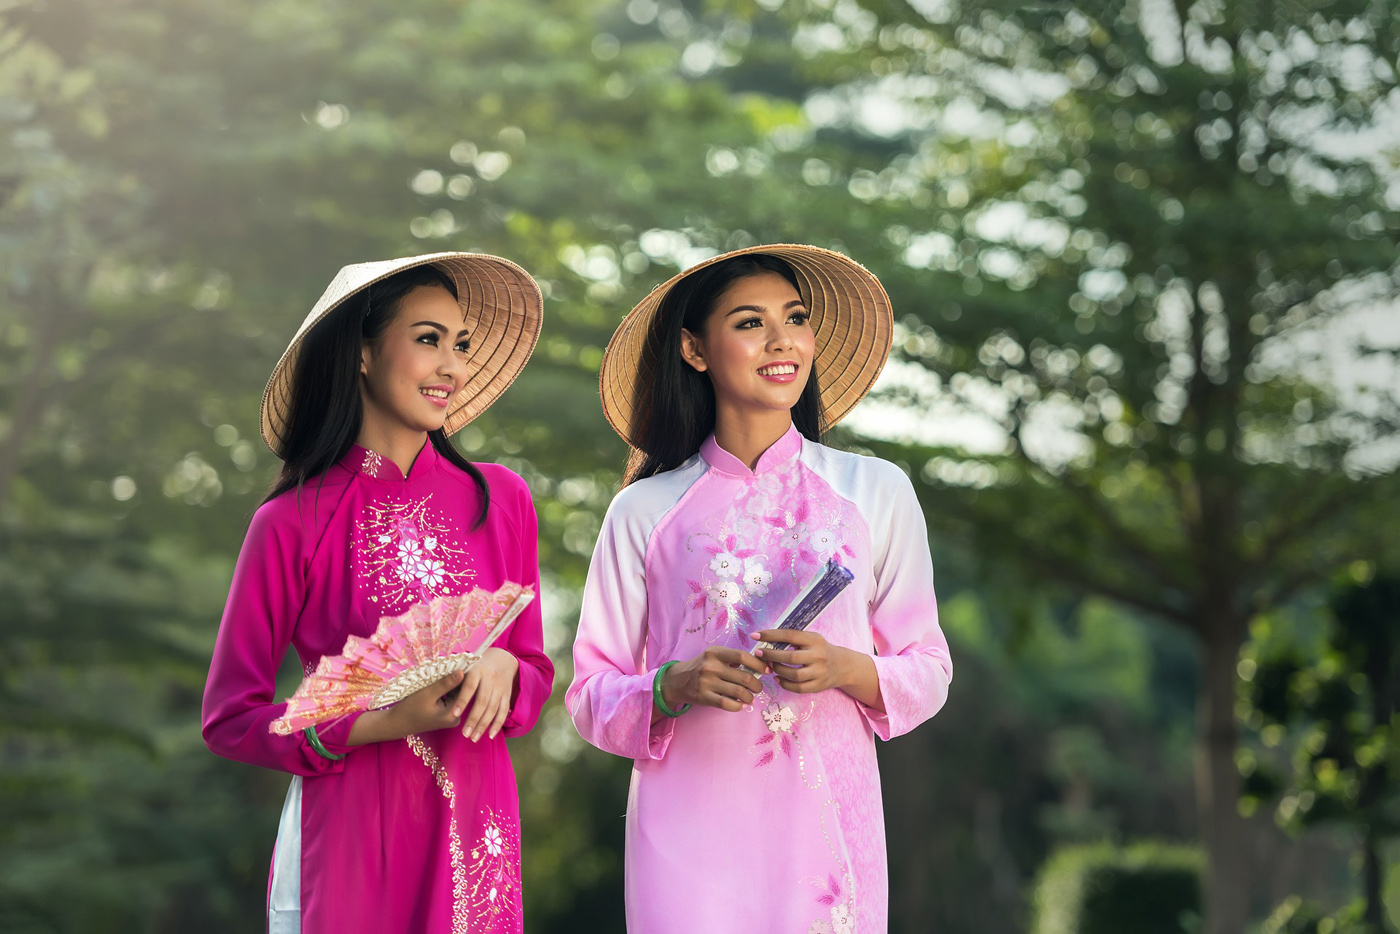 Национальный костюм вьетнамки